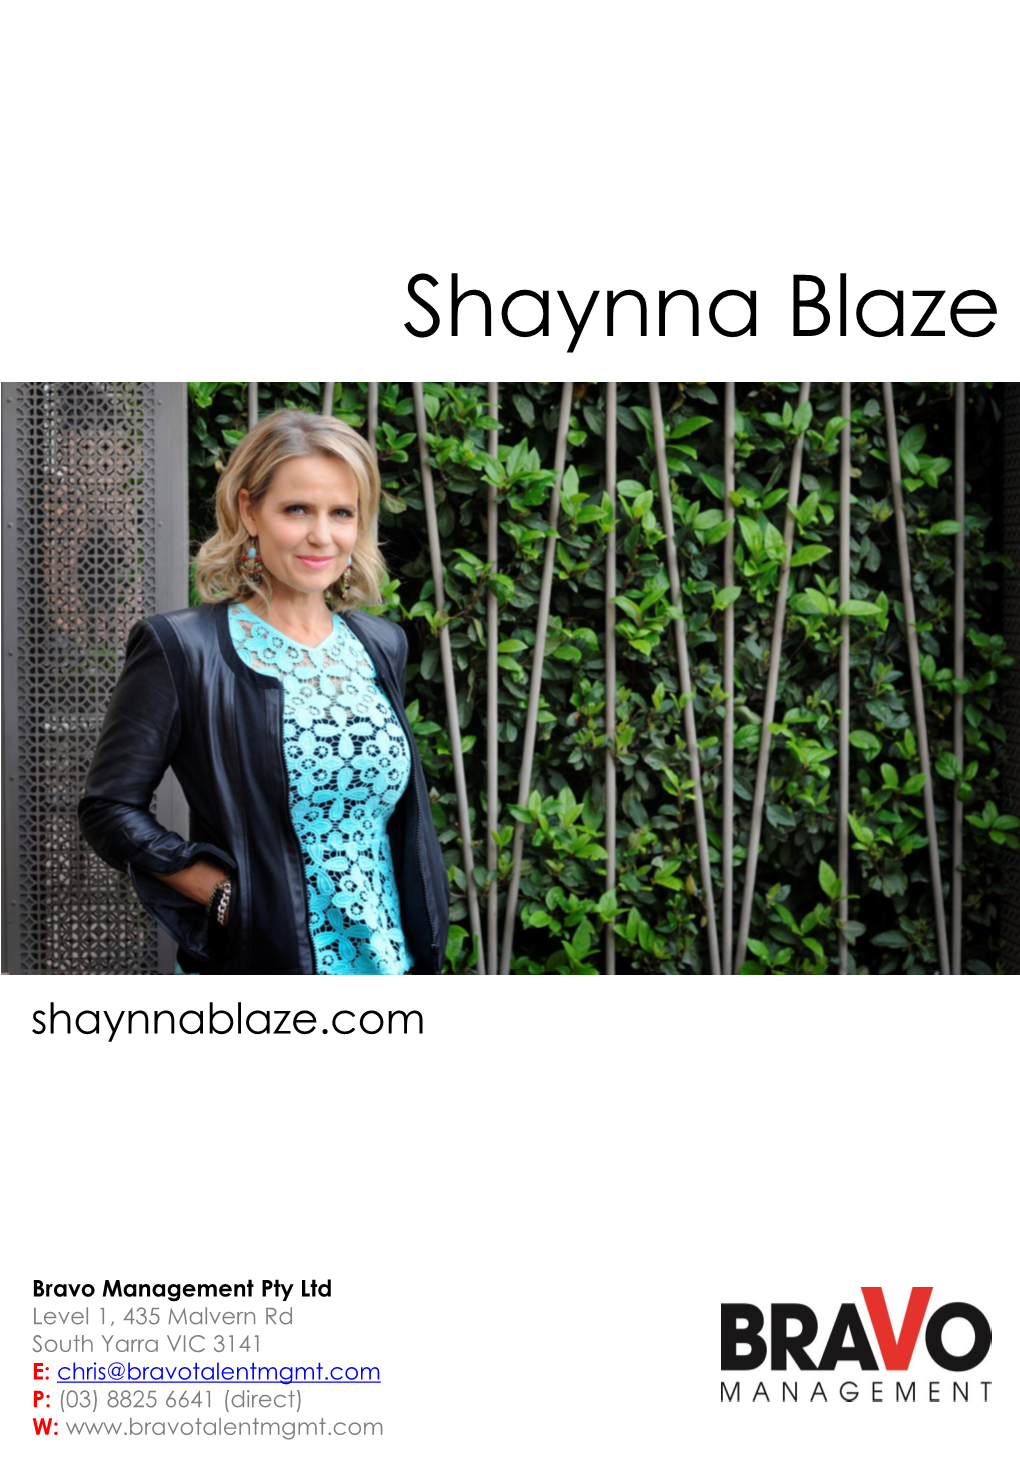 Shaynna Blaze